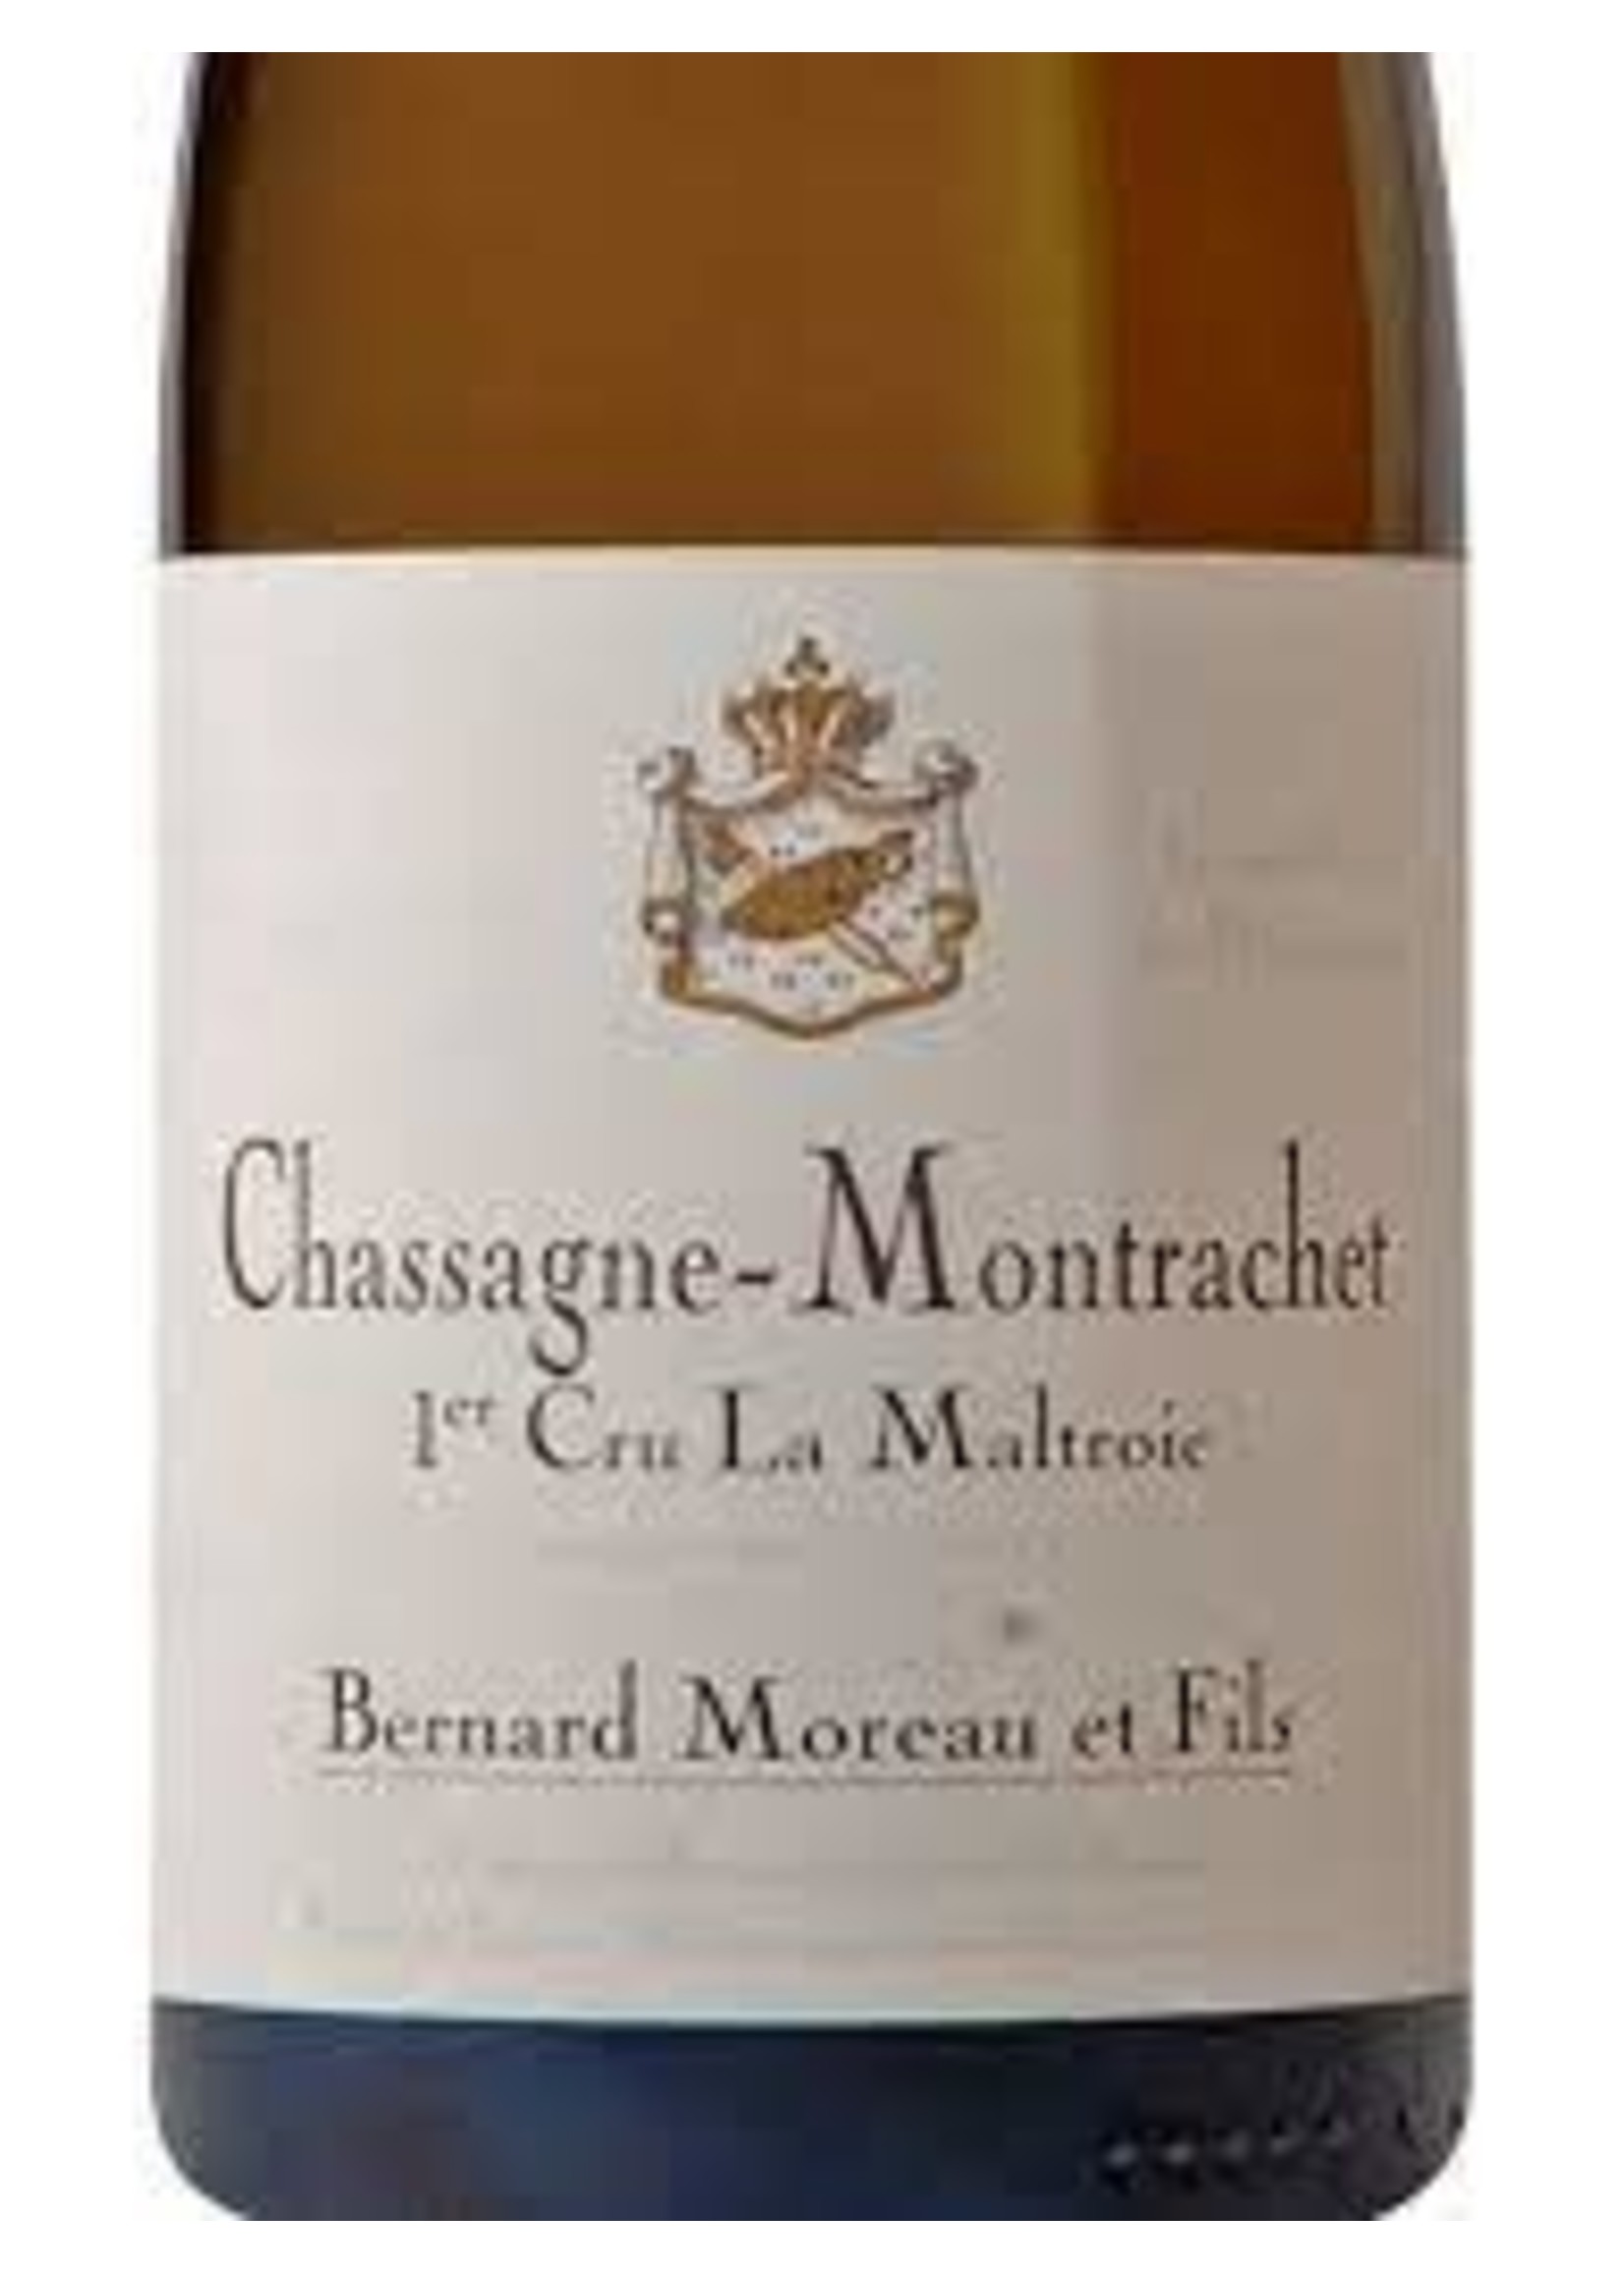 Bernard Moreau et Fils 2019 Chassagne Montrachet 1er Cru La Maltroie 750ml